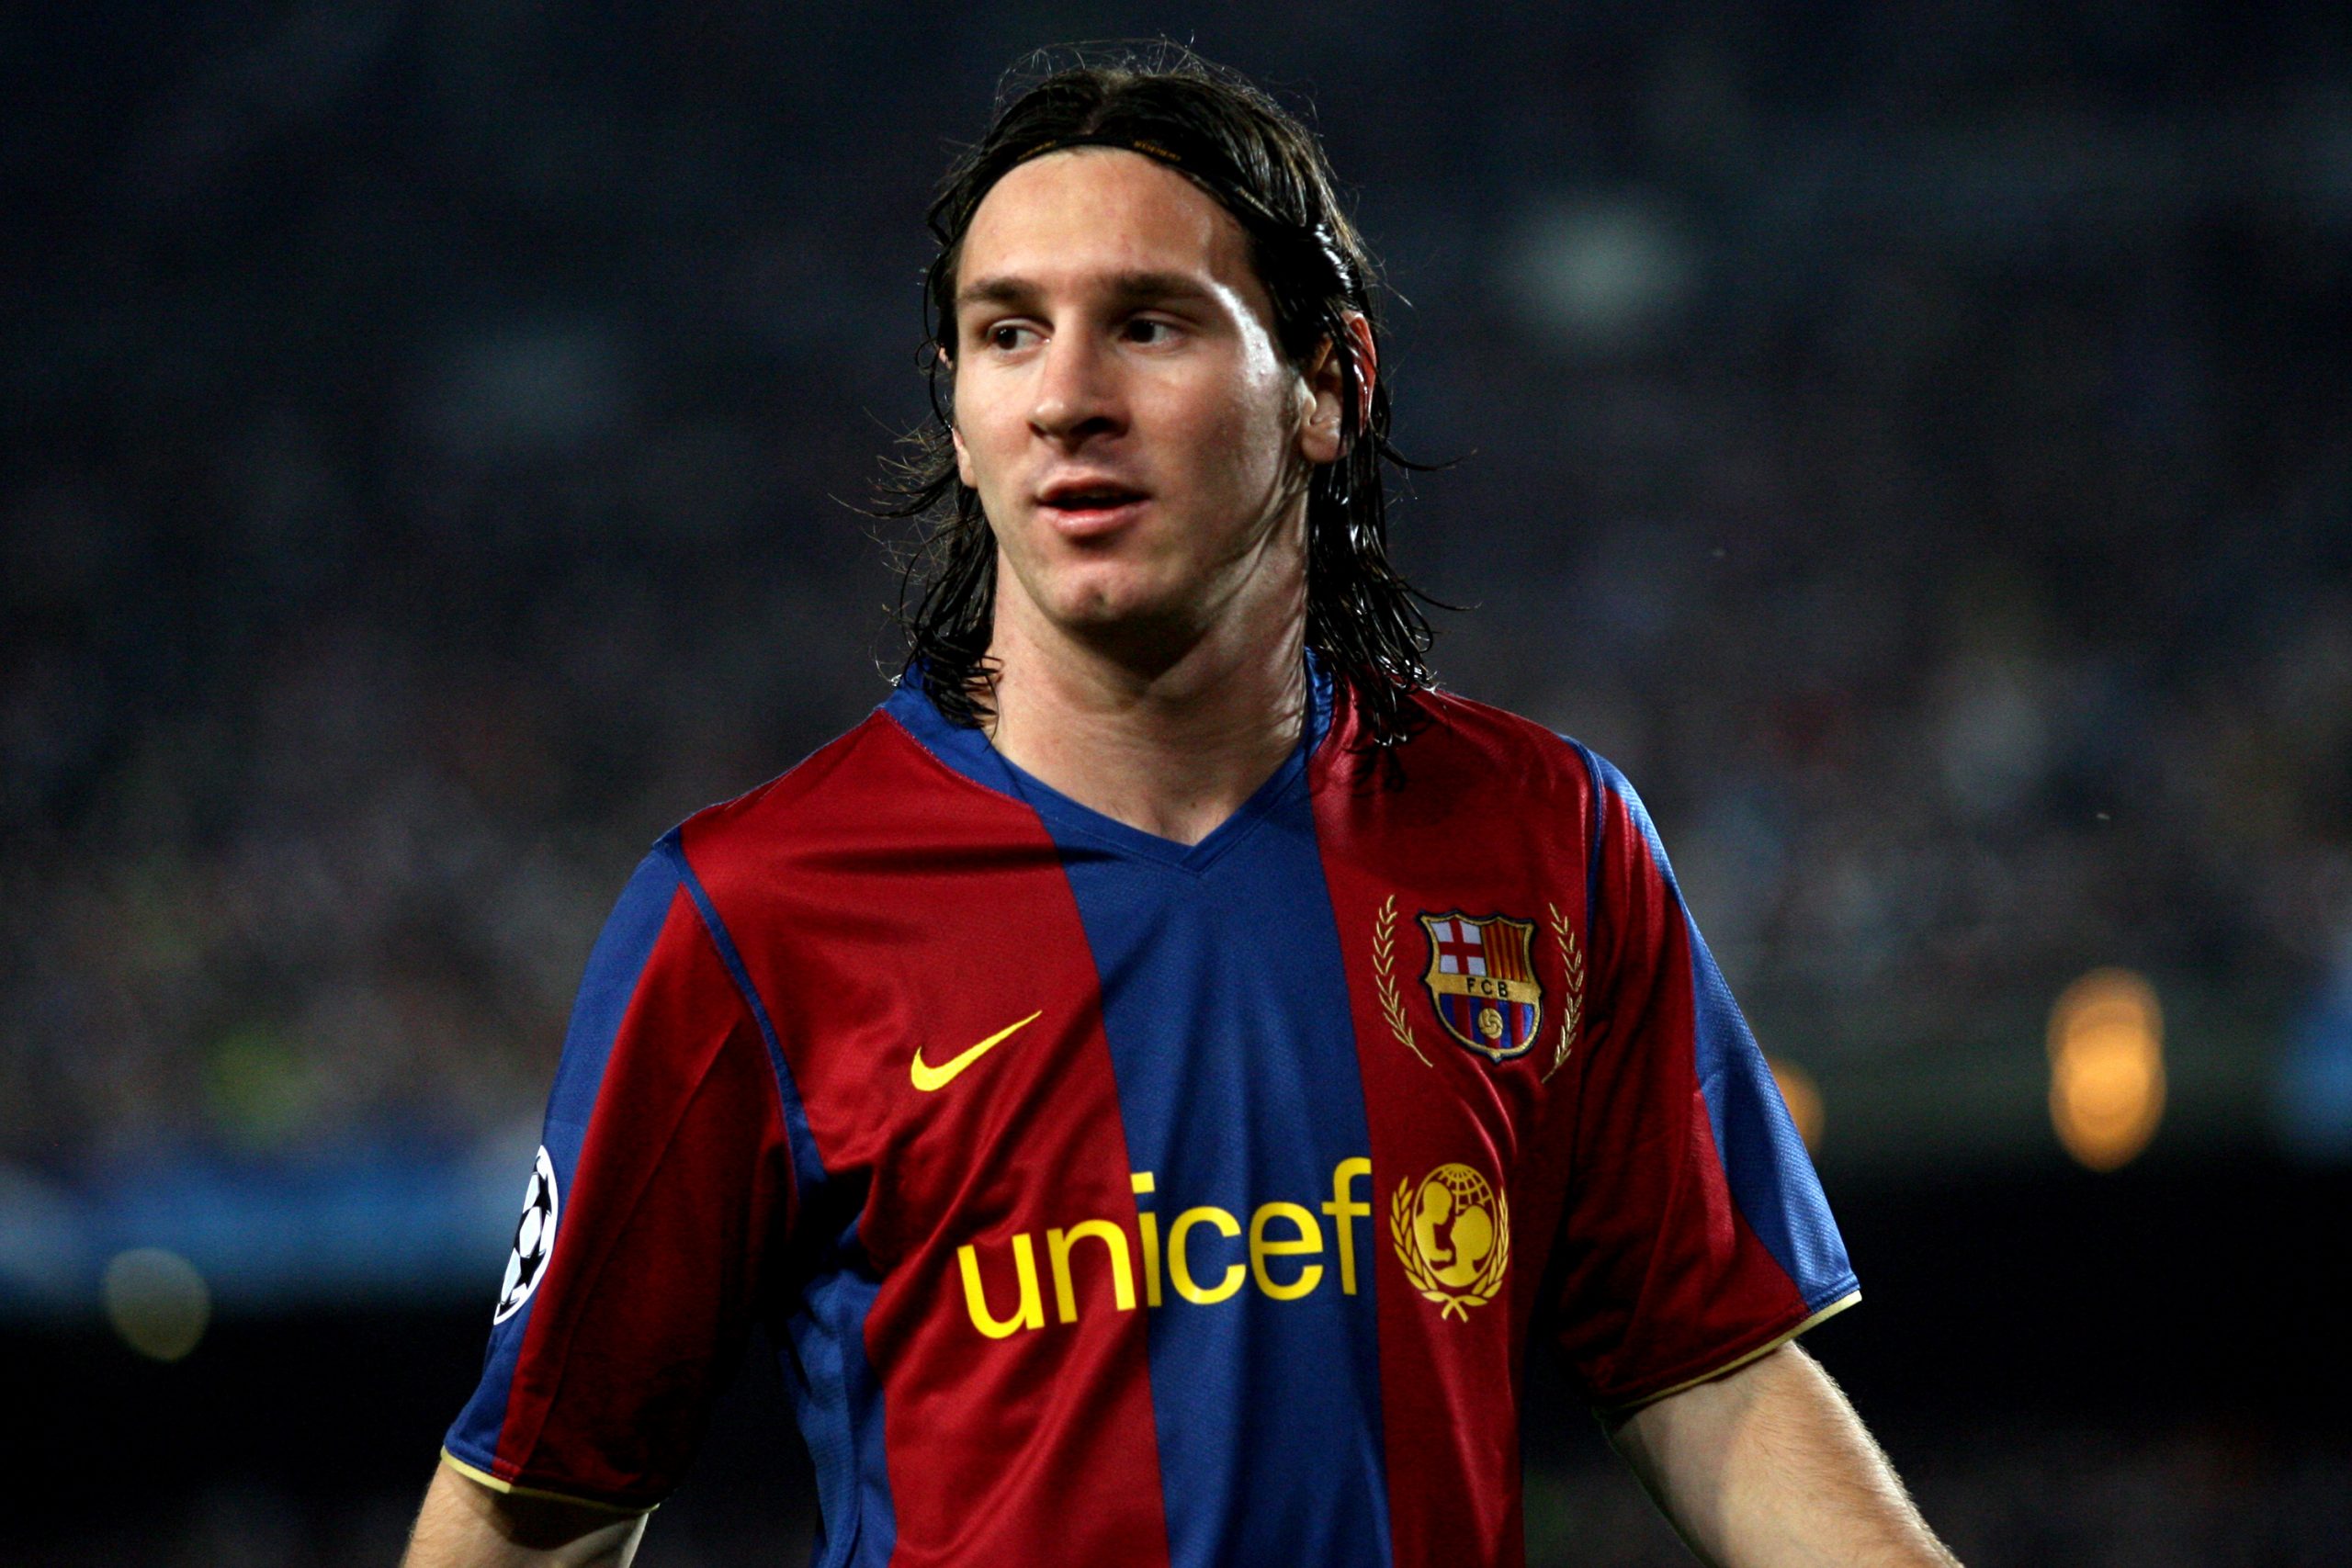 La Evolución de Lionel Messi, Capítulo 1: El Clásico de 2006/07